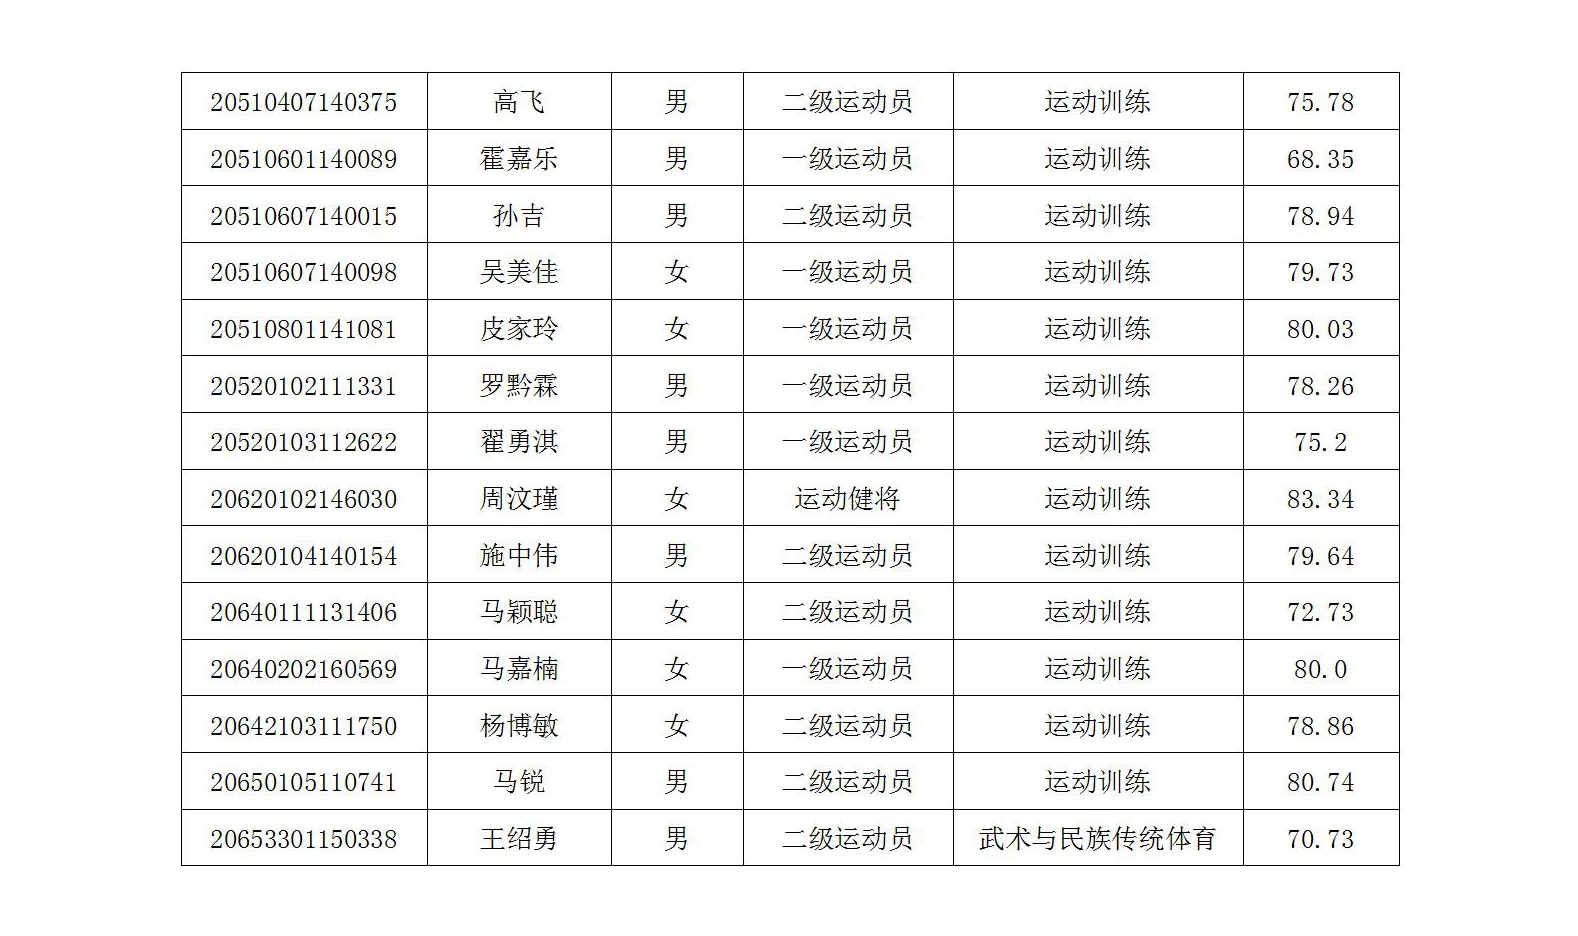 天津体育学院2020年运动训练、武术与民族传统体育专业拟录取名单公示